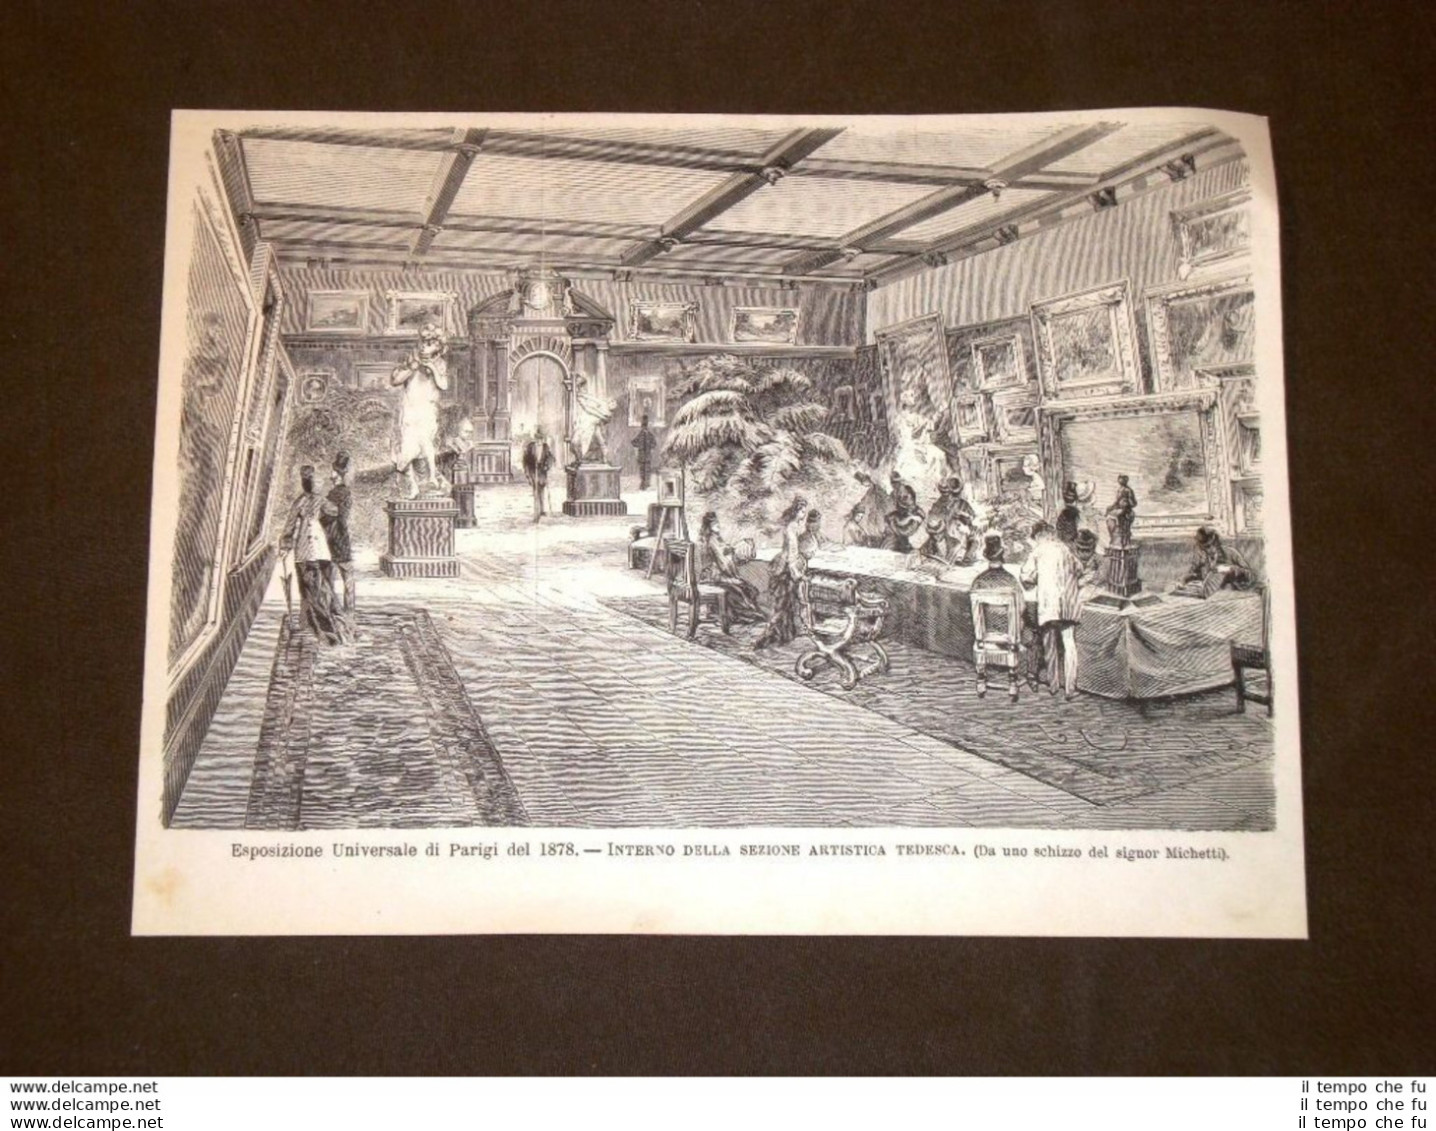 Esposizione Universale Di Parigi Nel 1878 Sala Dell'arte Tedesca O Di Germania - Before 1900